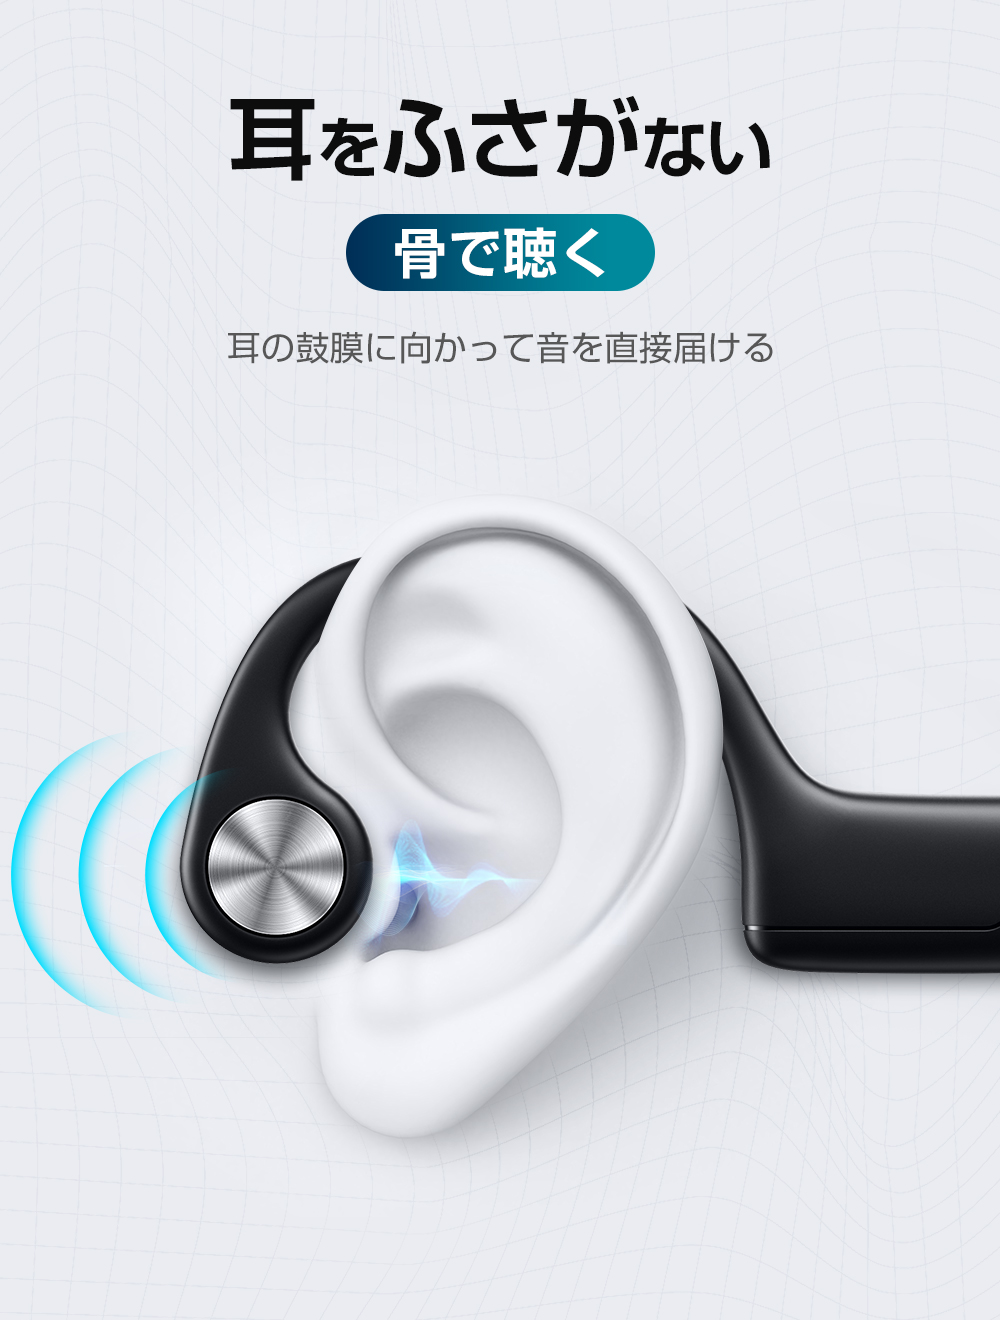 骨伝導イヤホン Bluetooth 5.3 ワイヤレスイヤホン マイク付き ヘッドホン 10H連続再生 耳掛け式 自動ペアリング 両耳通話 超軽量  IPX6防水 iPhone/Android対応 ej-g20 KuKuYa 通販 